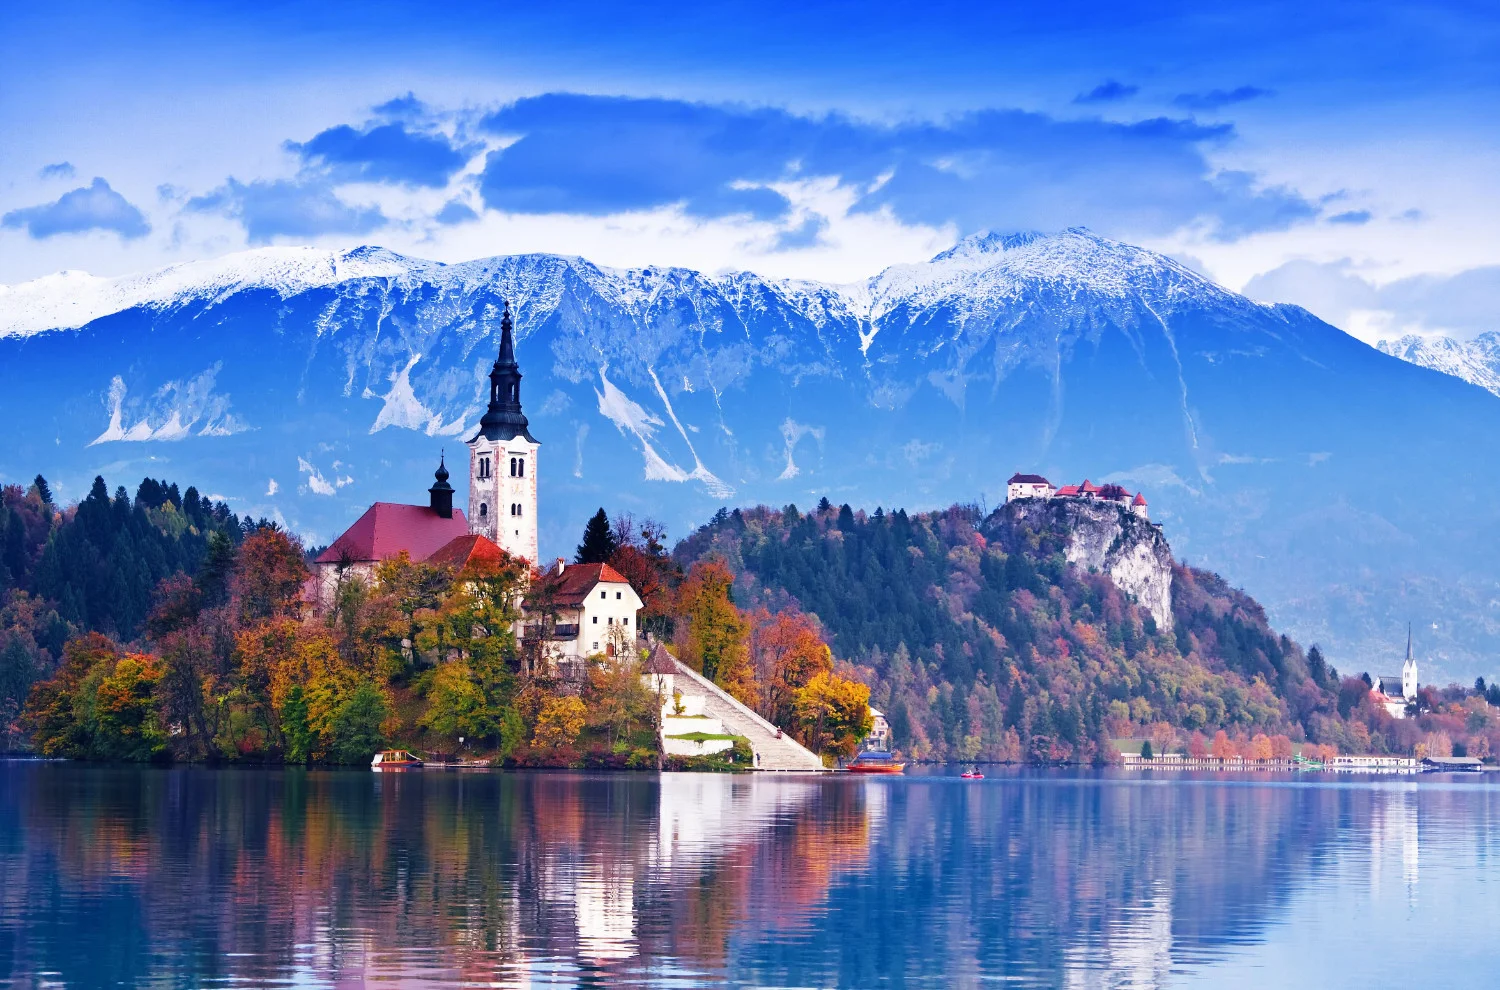 W promieniu 20 kilometrów od autostrady A1, możesz dotrzeć do urzekających atrakcji, takich jak jaskinia Postojna, Predjamski Grad i cud natury – jezioro Bled.